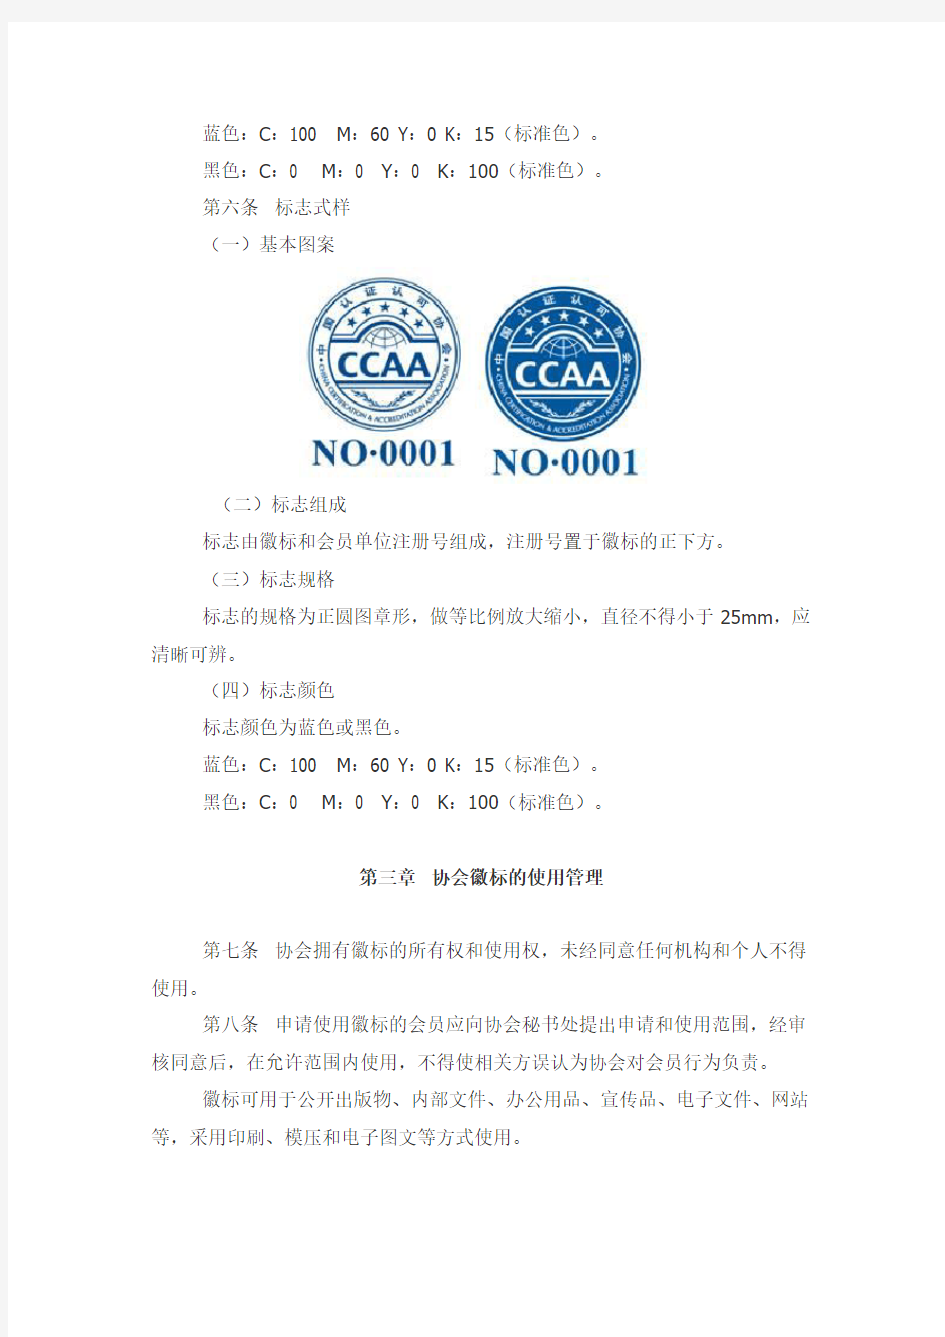 中国认证认可协会徽标和标志管理办法